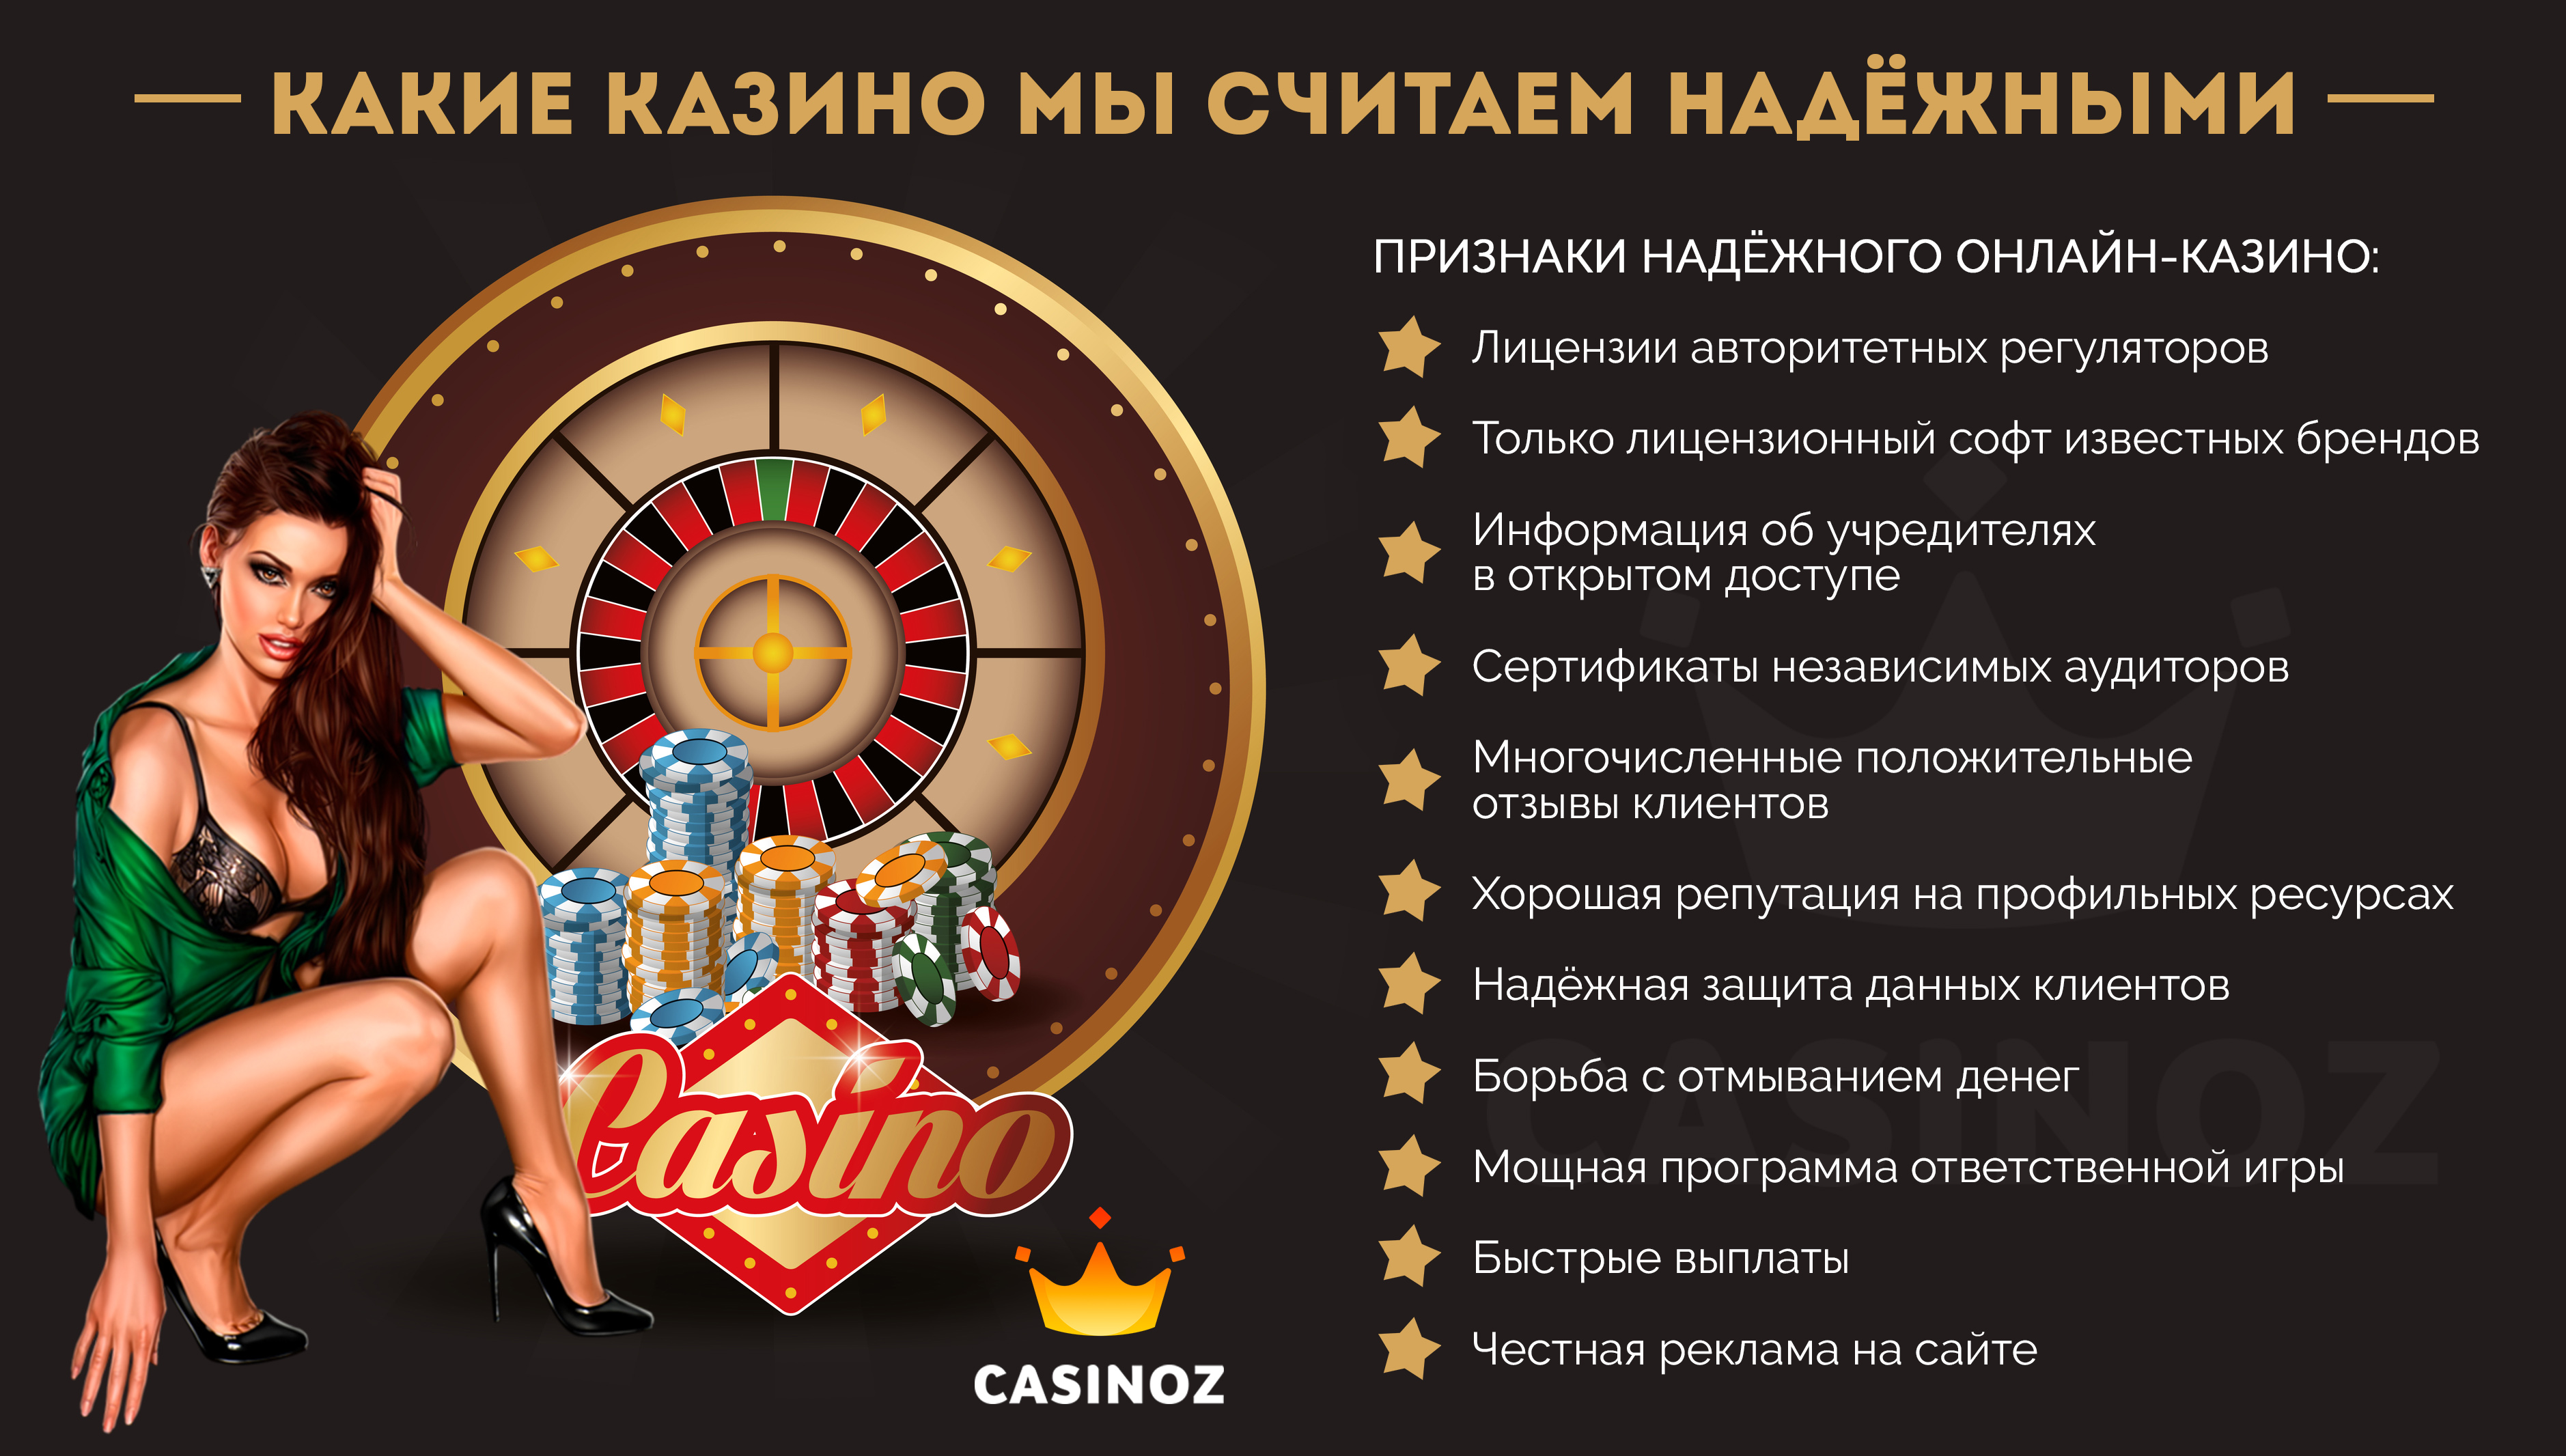 Список проверенных казино поиграть игровые автоматы бесплатно без регистрации смс